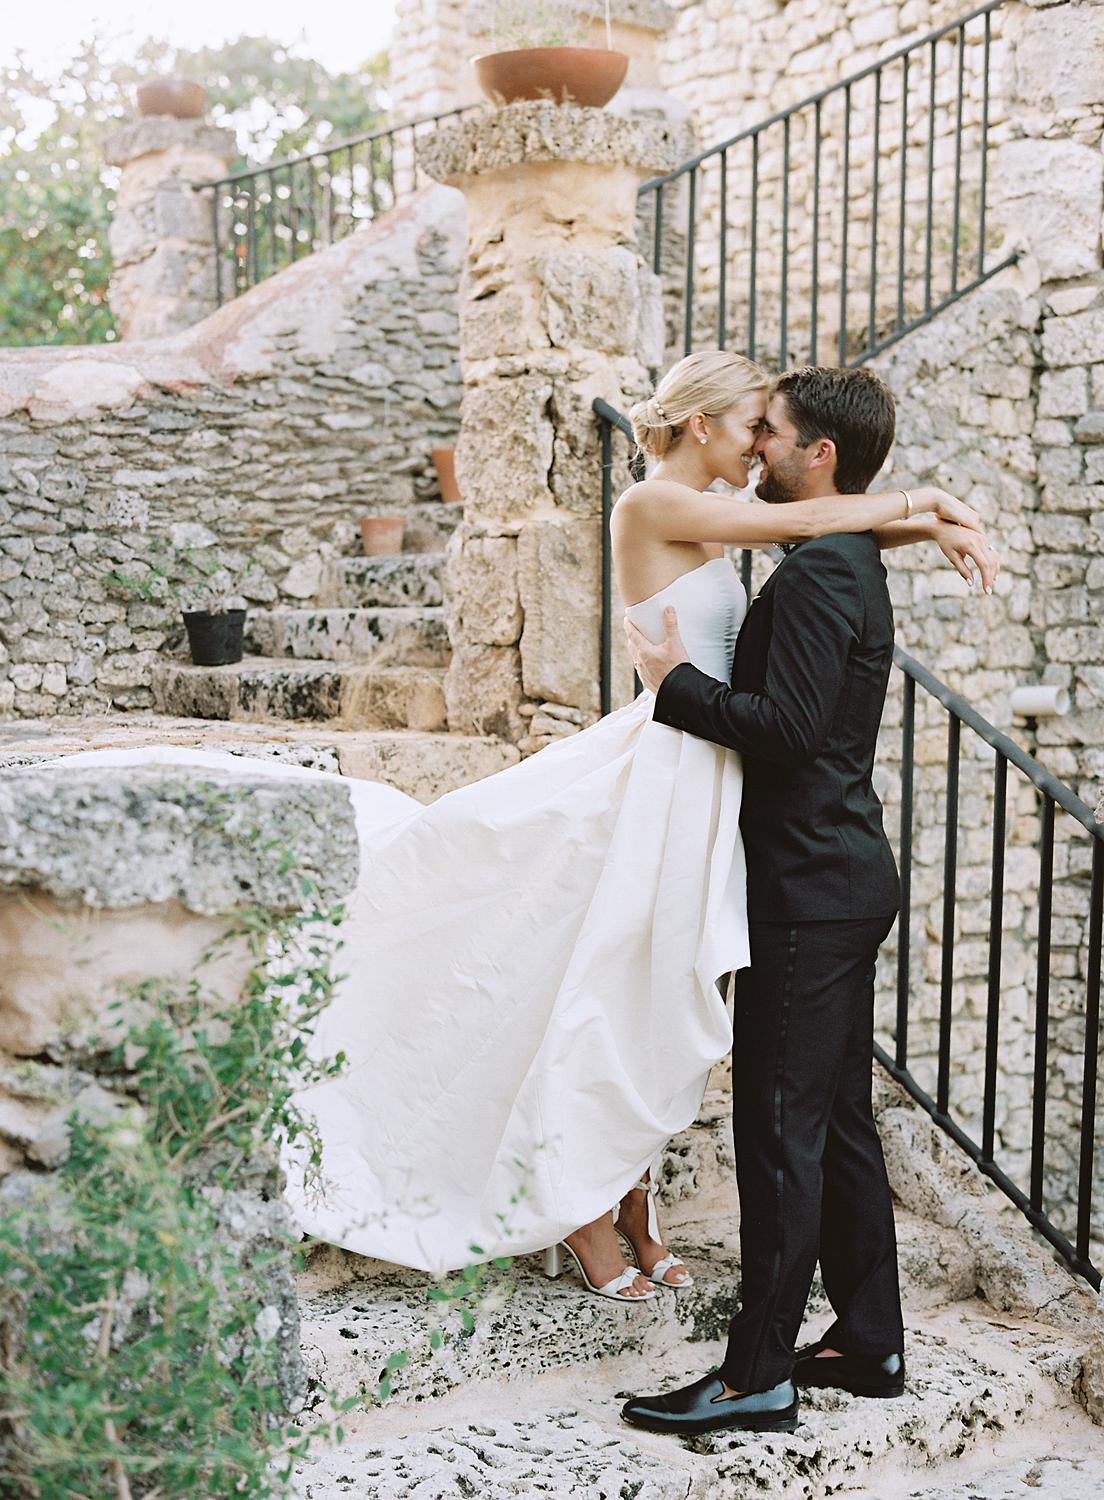 Bride and groom embrace on stone staircase at their Altos de Chavón wedding.